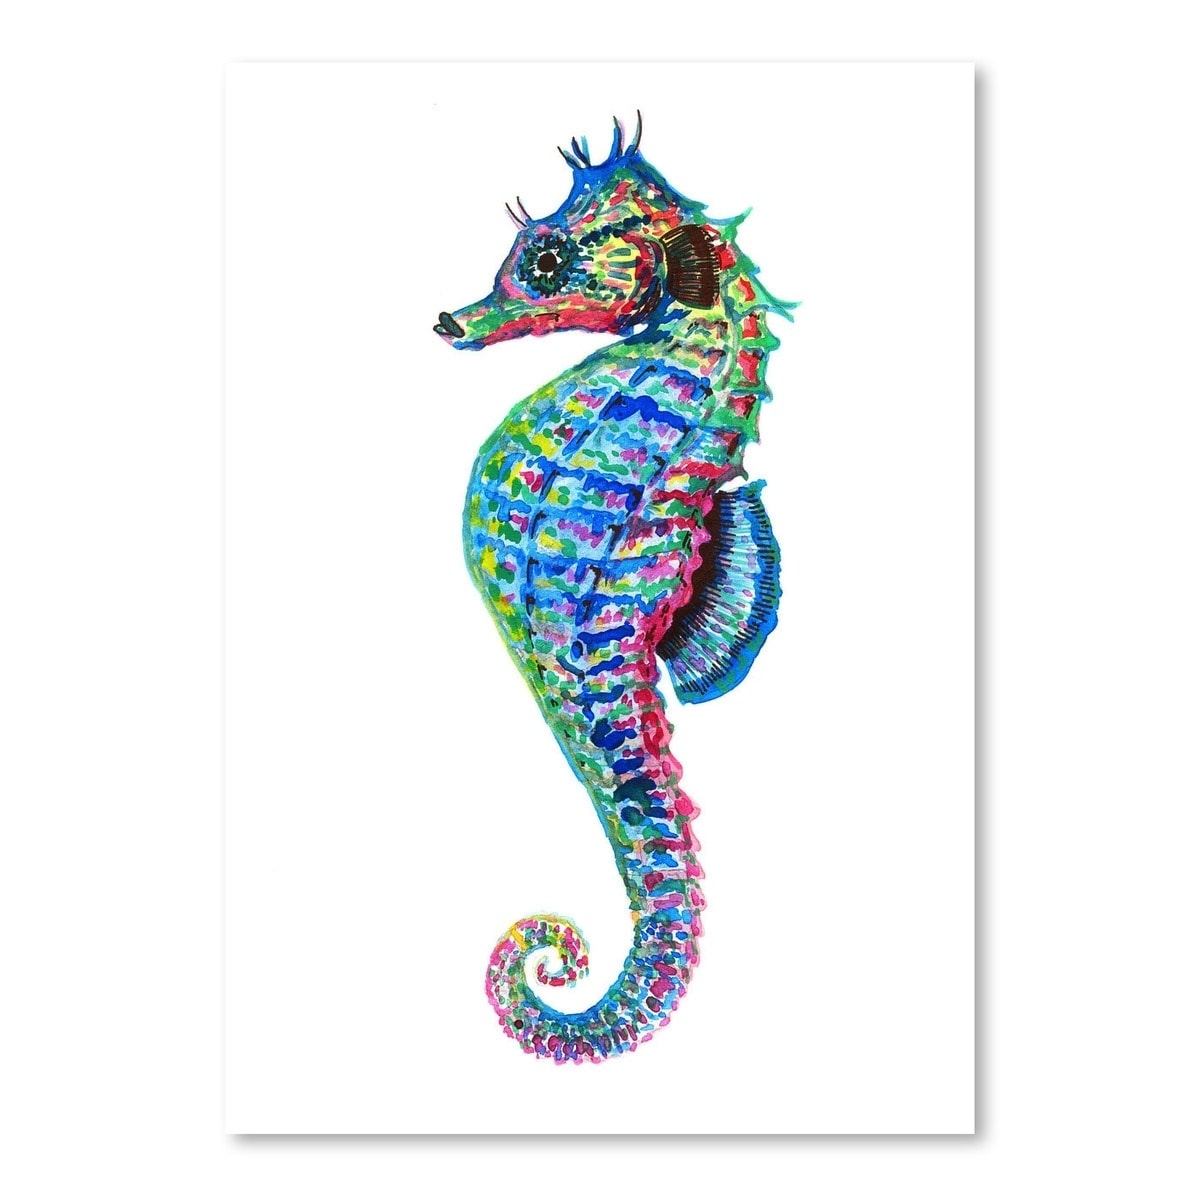 colorful seahorse photos